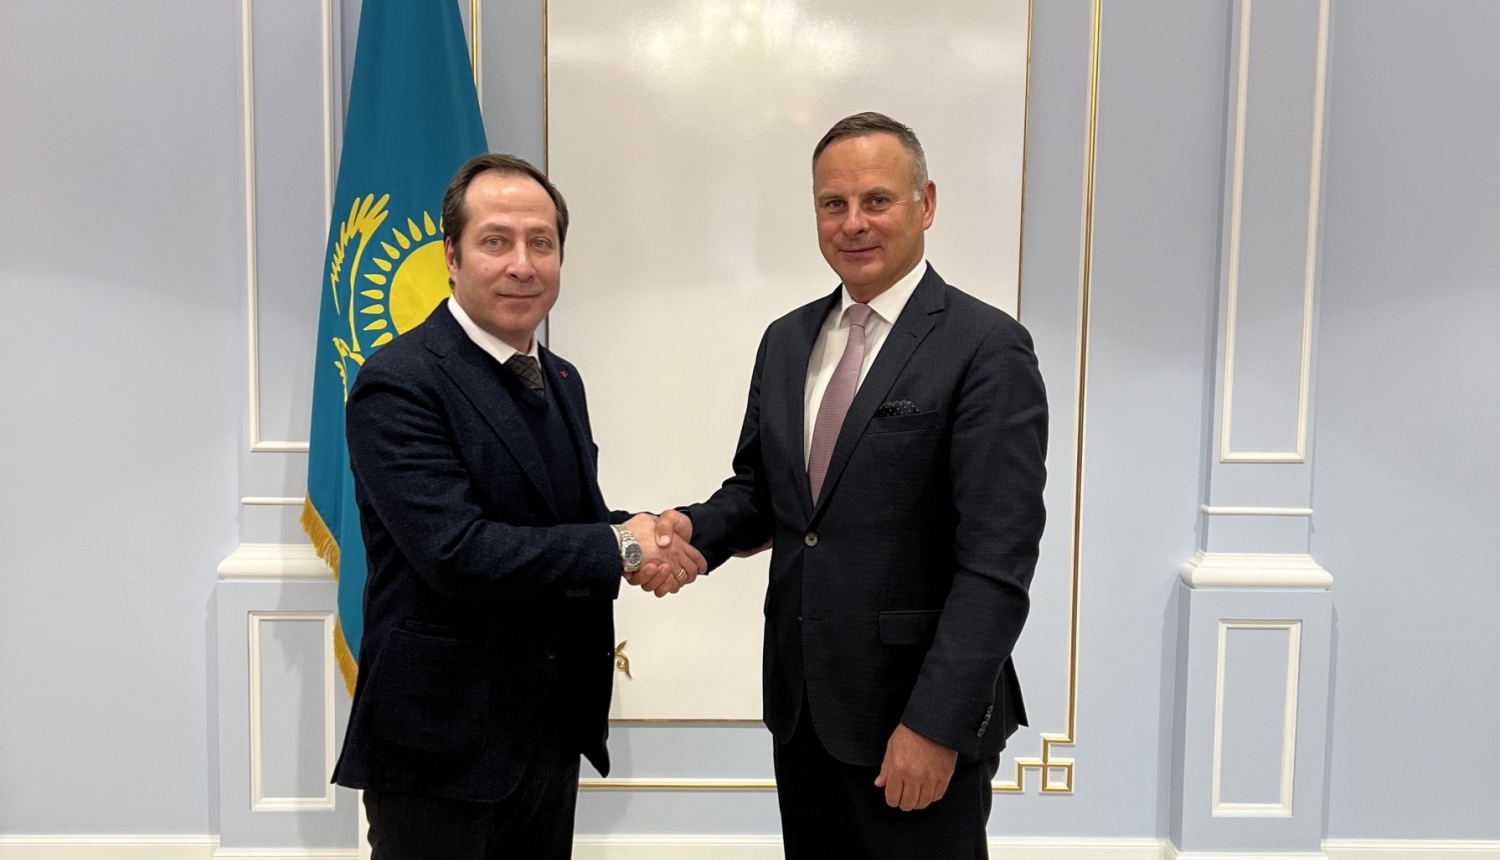 Kazahstānas vēstnieks Timurs Primbetovs un Satiksmes ministrijas valsts sekretāres vietnieks Uldis Reimanis